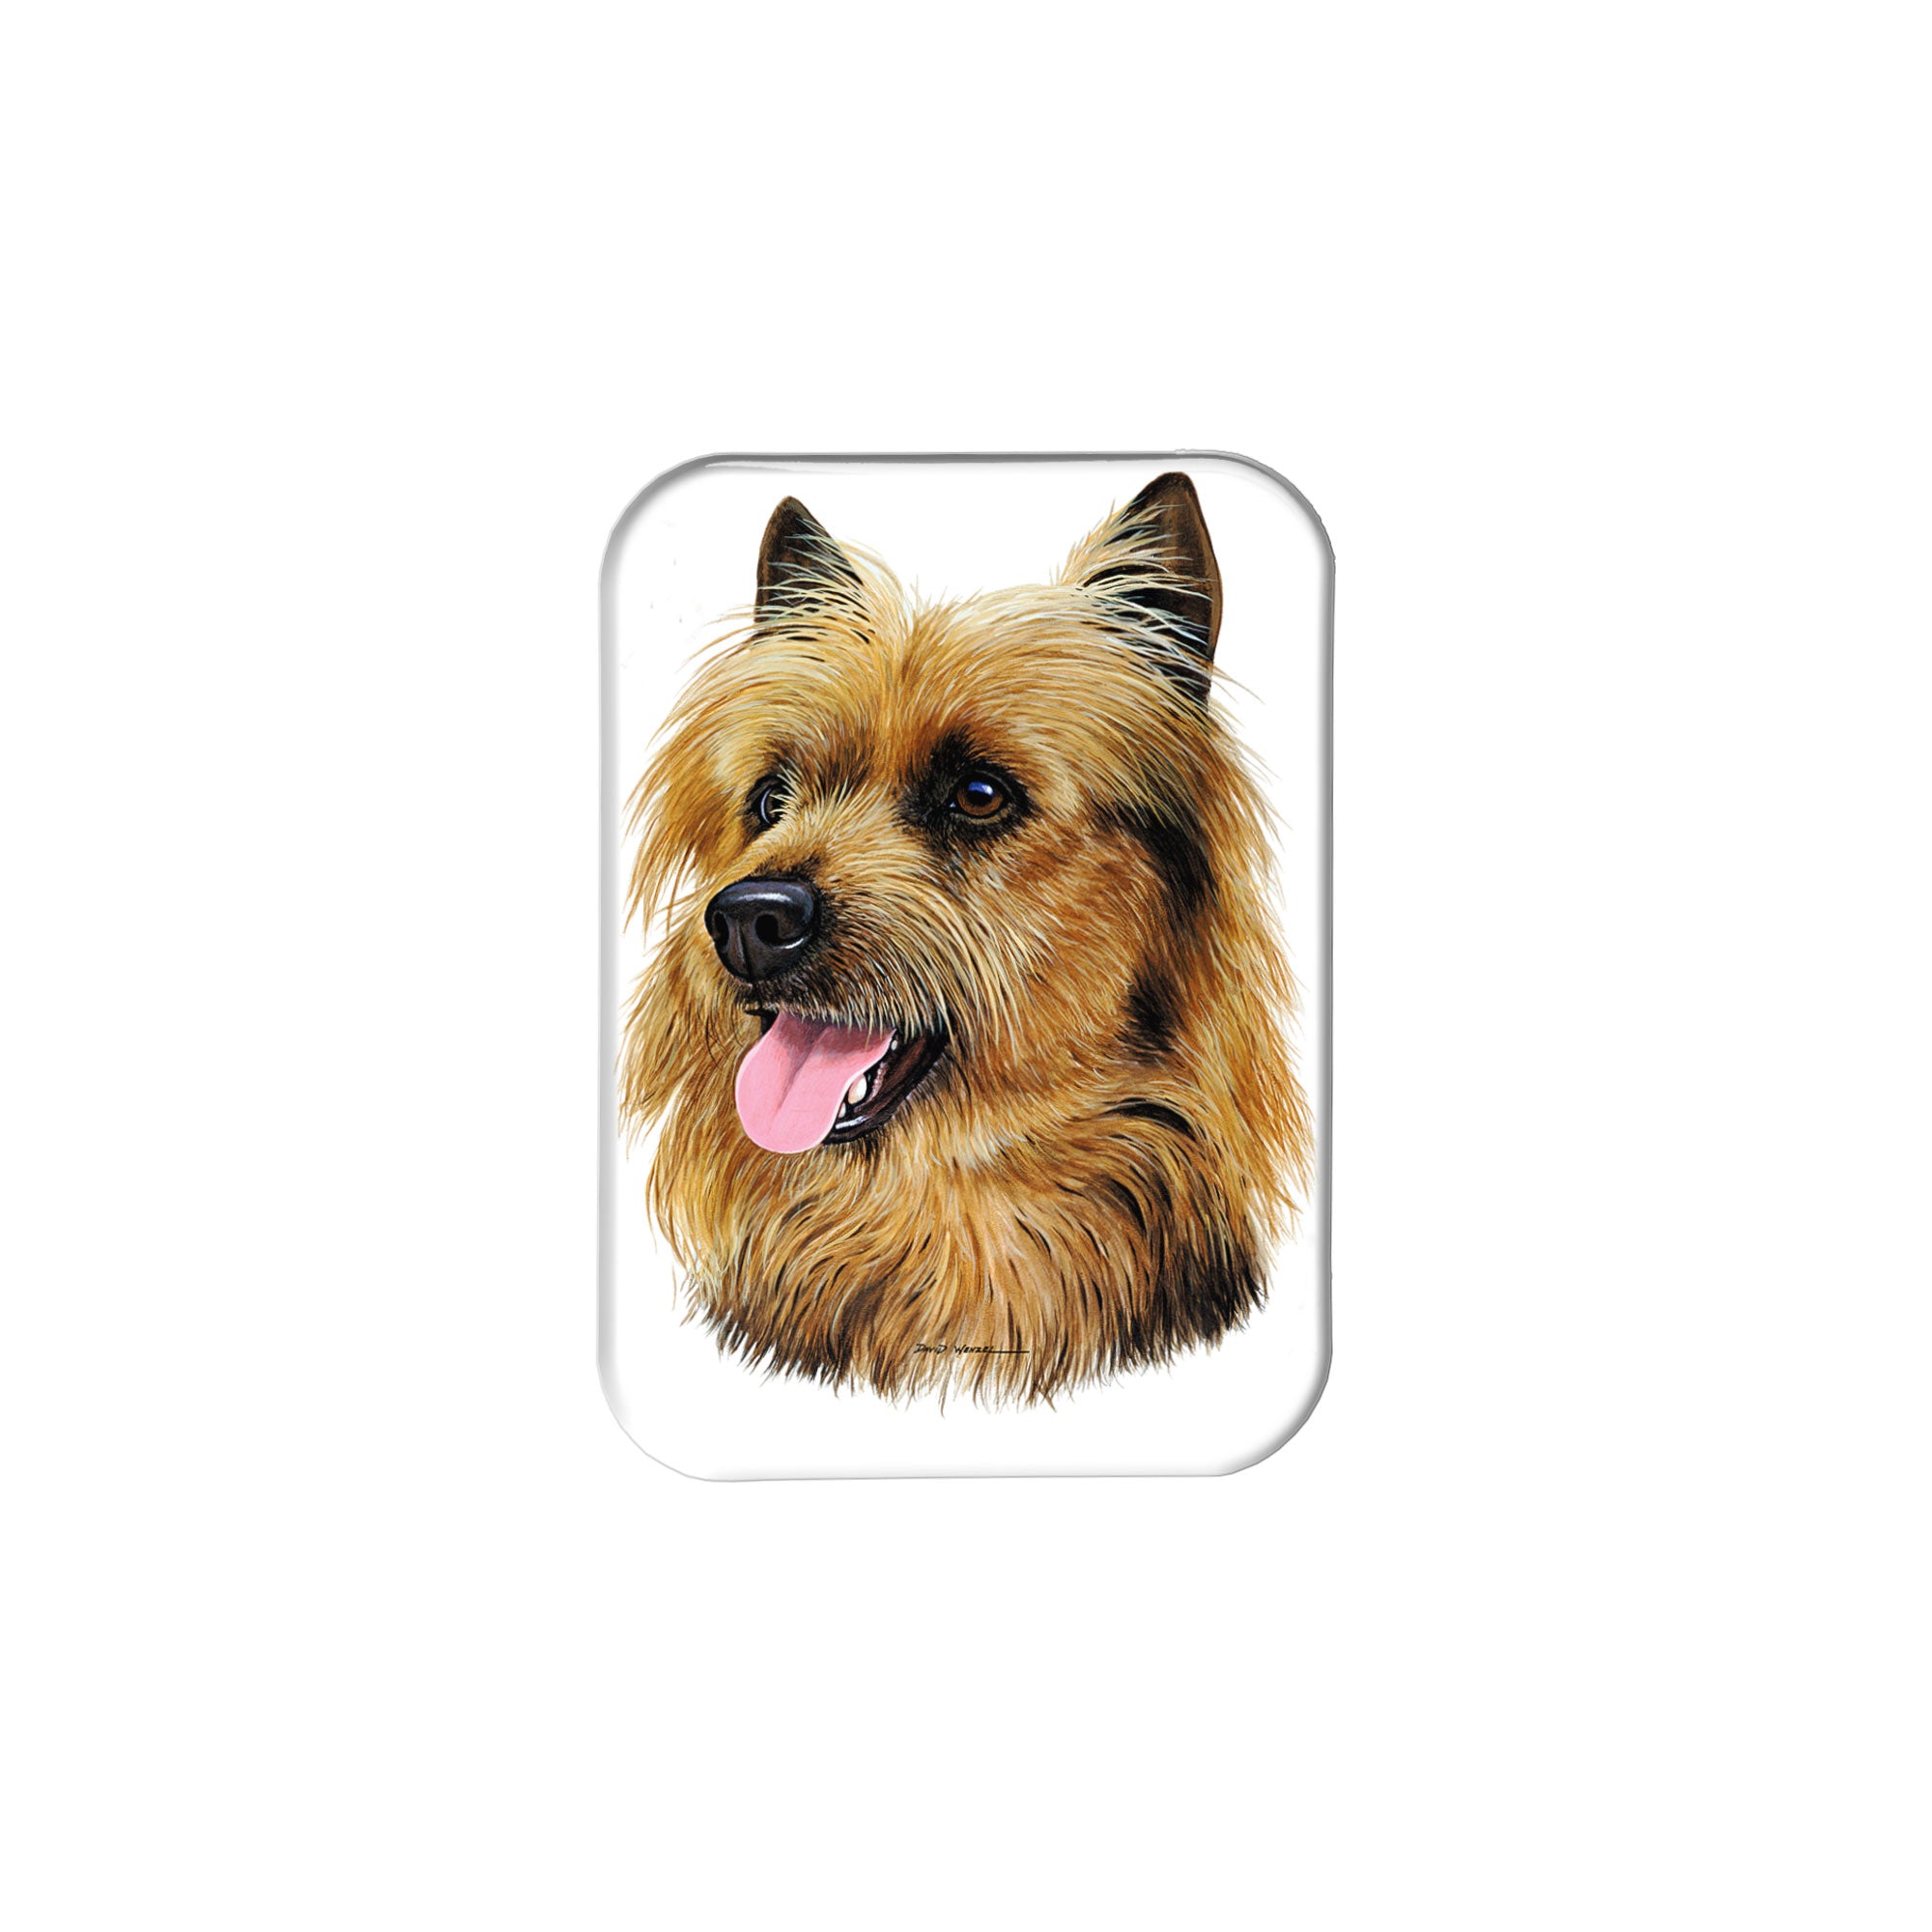 "Australian Terrier" - 2.5" X 3.5" Rectangle Fridge Magnets